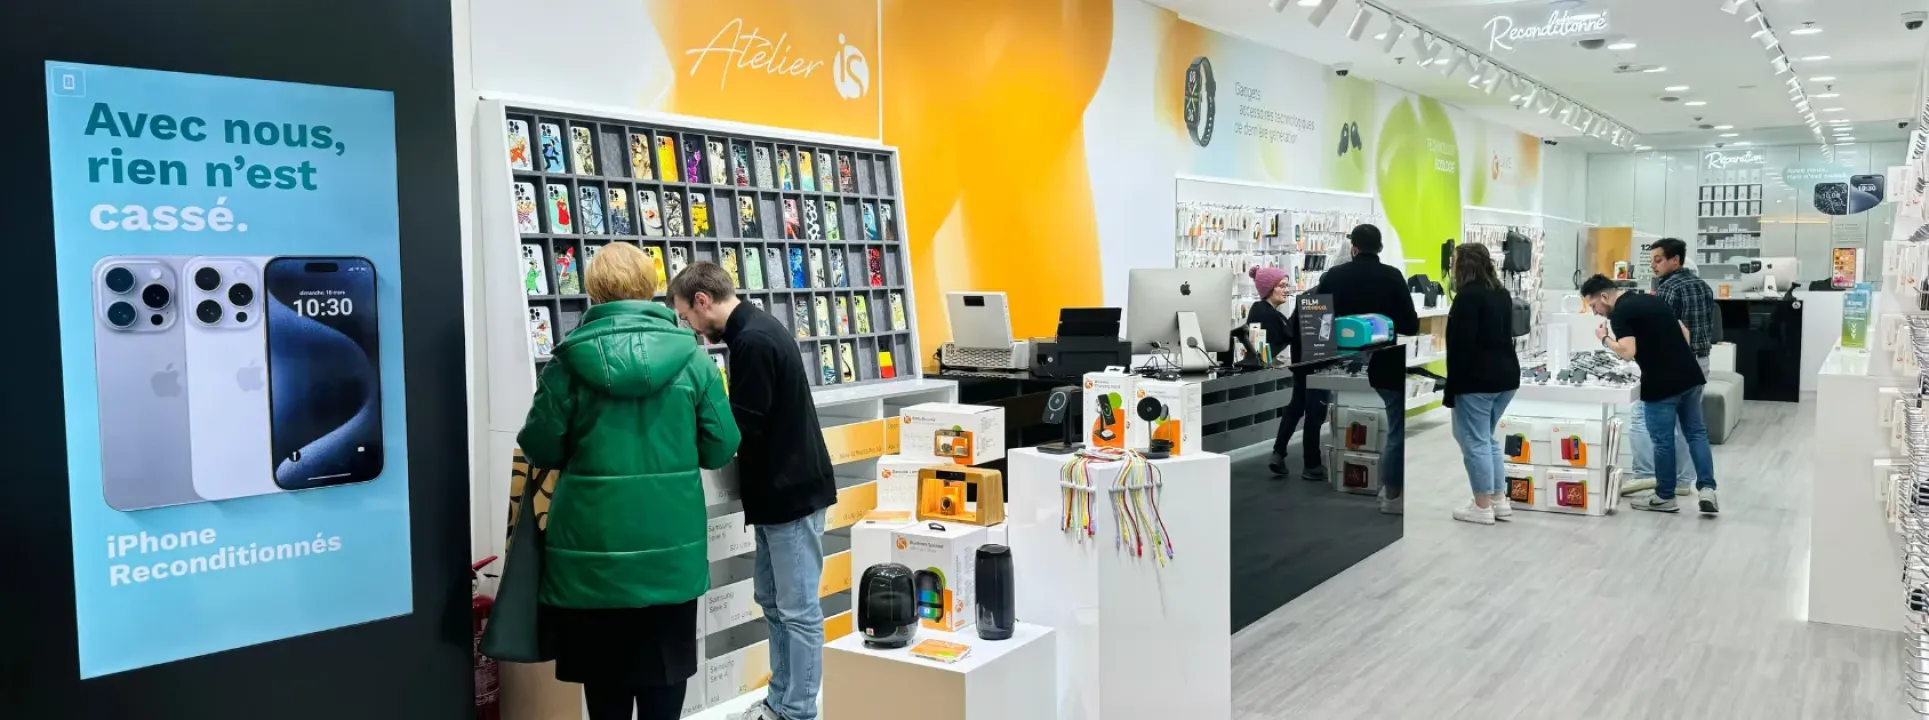 iServices abre quinta loja na Bélgica com o novo Atelier iS  blog post